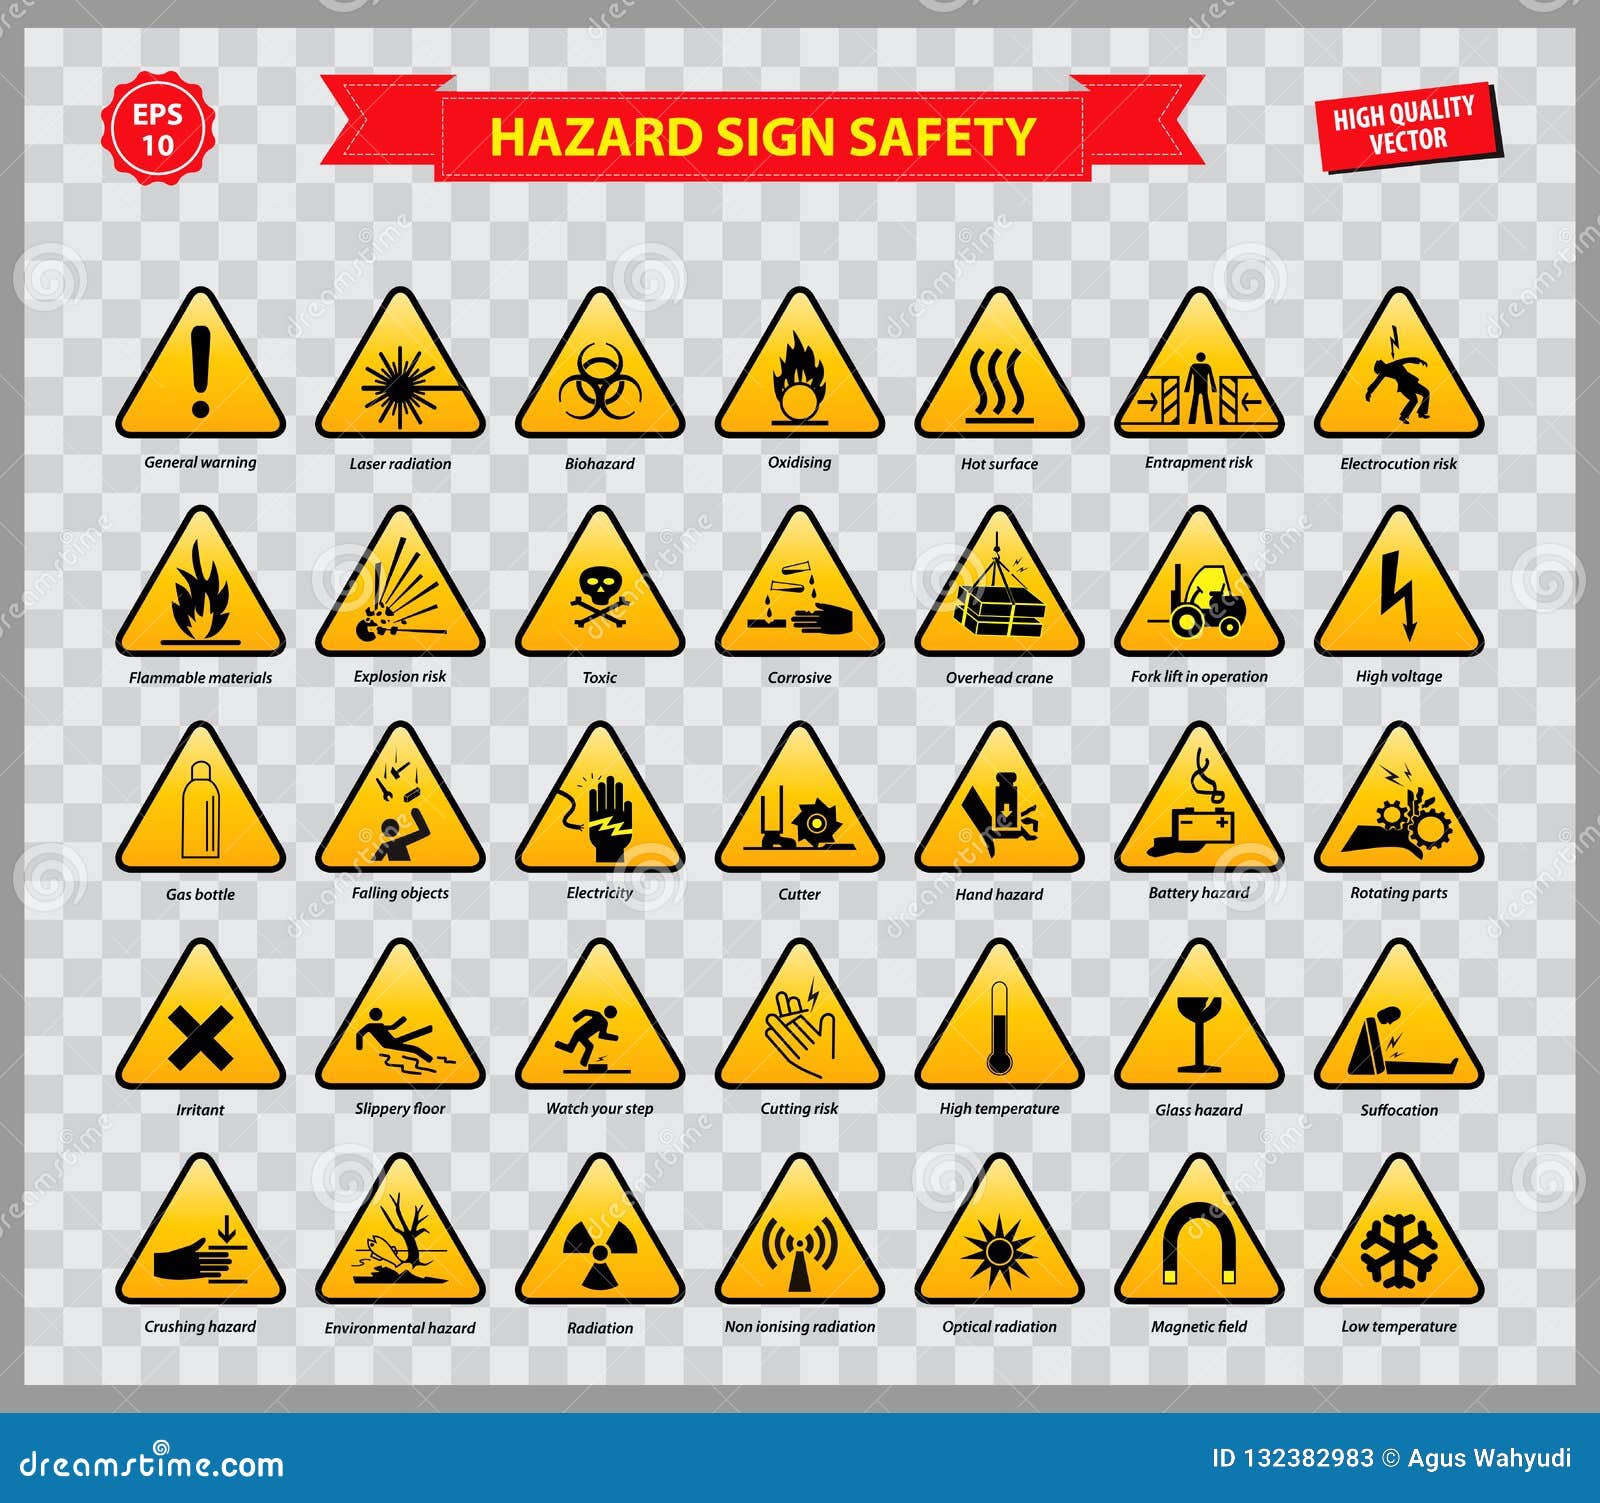 set of hazard sign safety